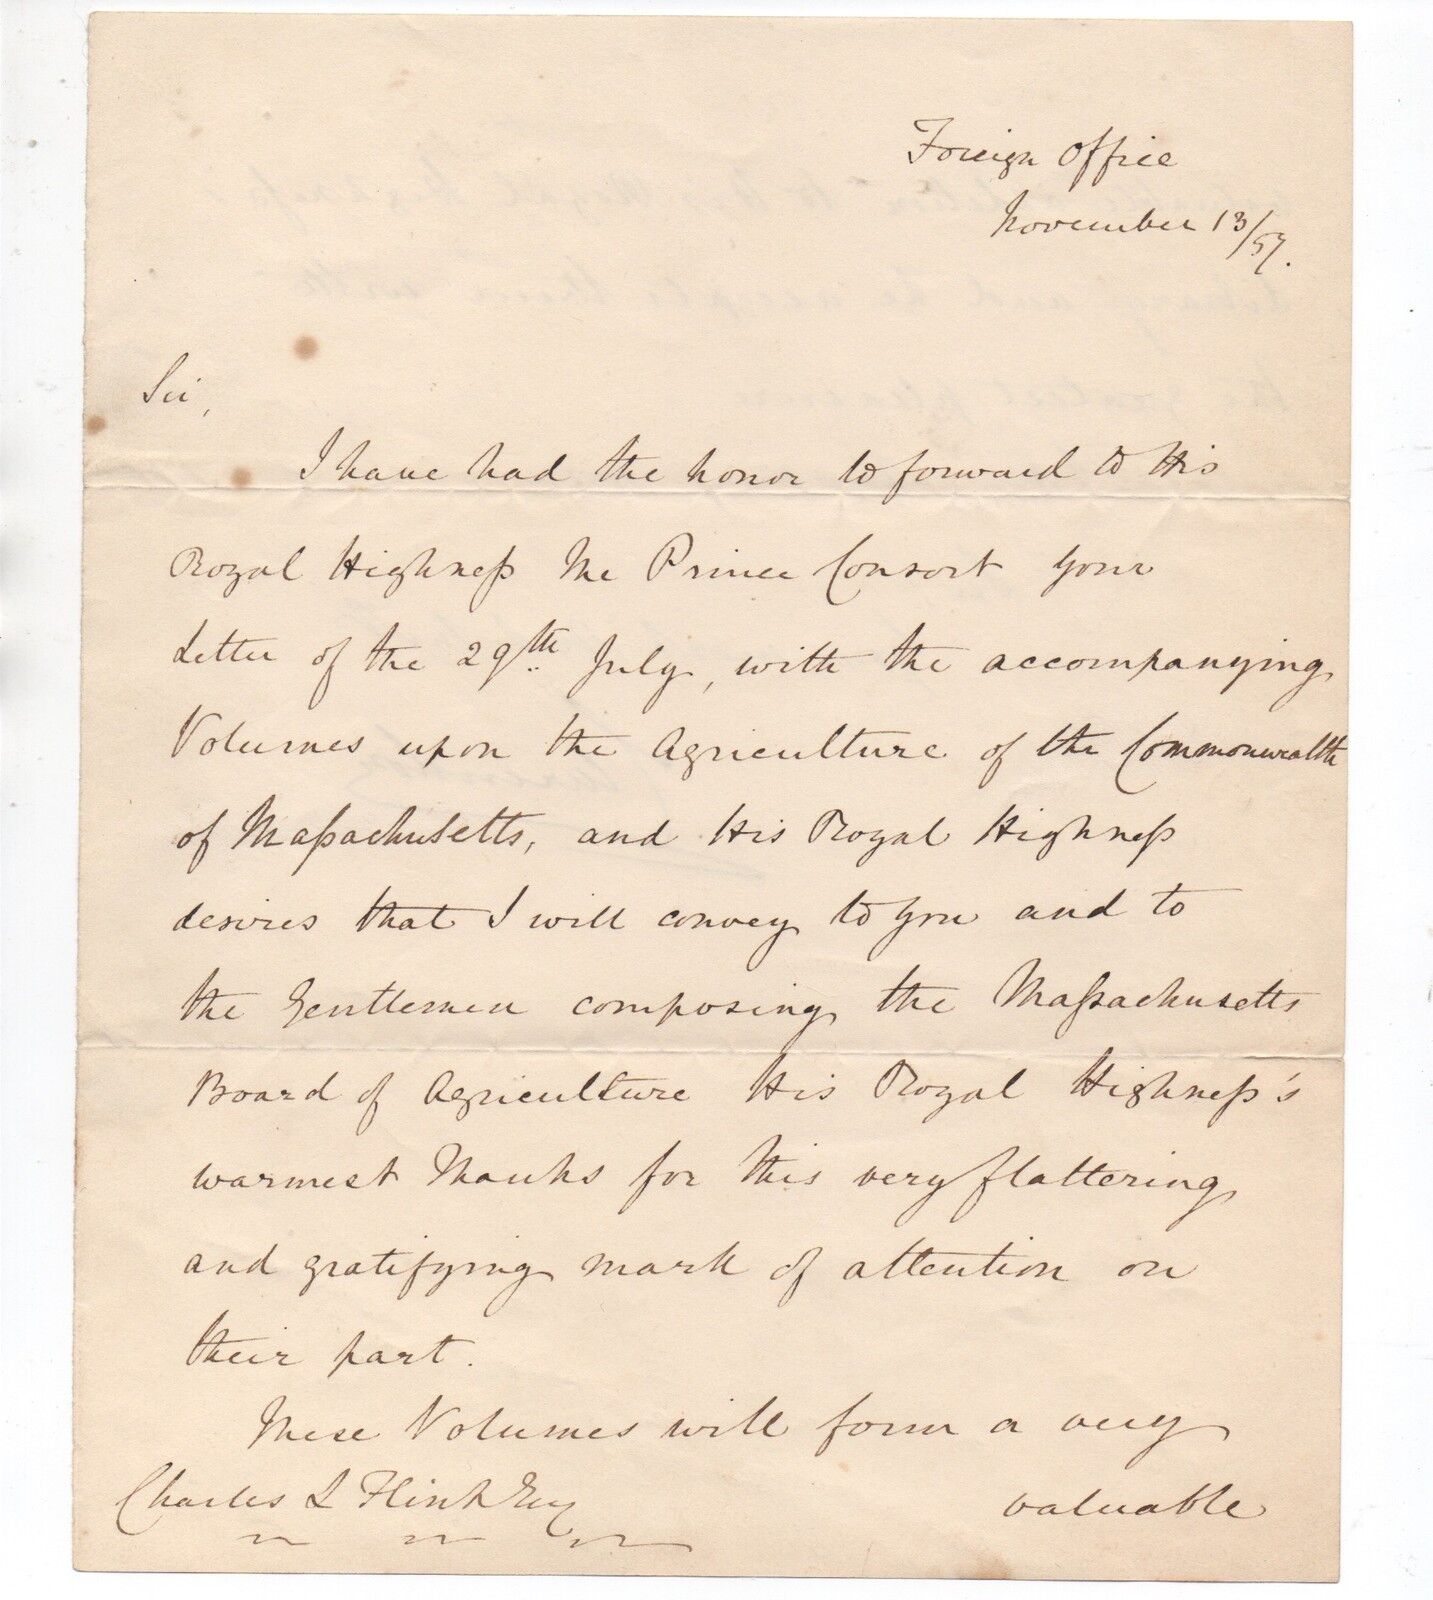 1857 Letter regarding Donating Books on Massachusetts to Royal Highness Library